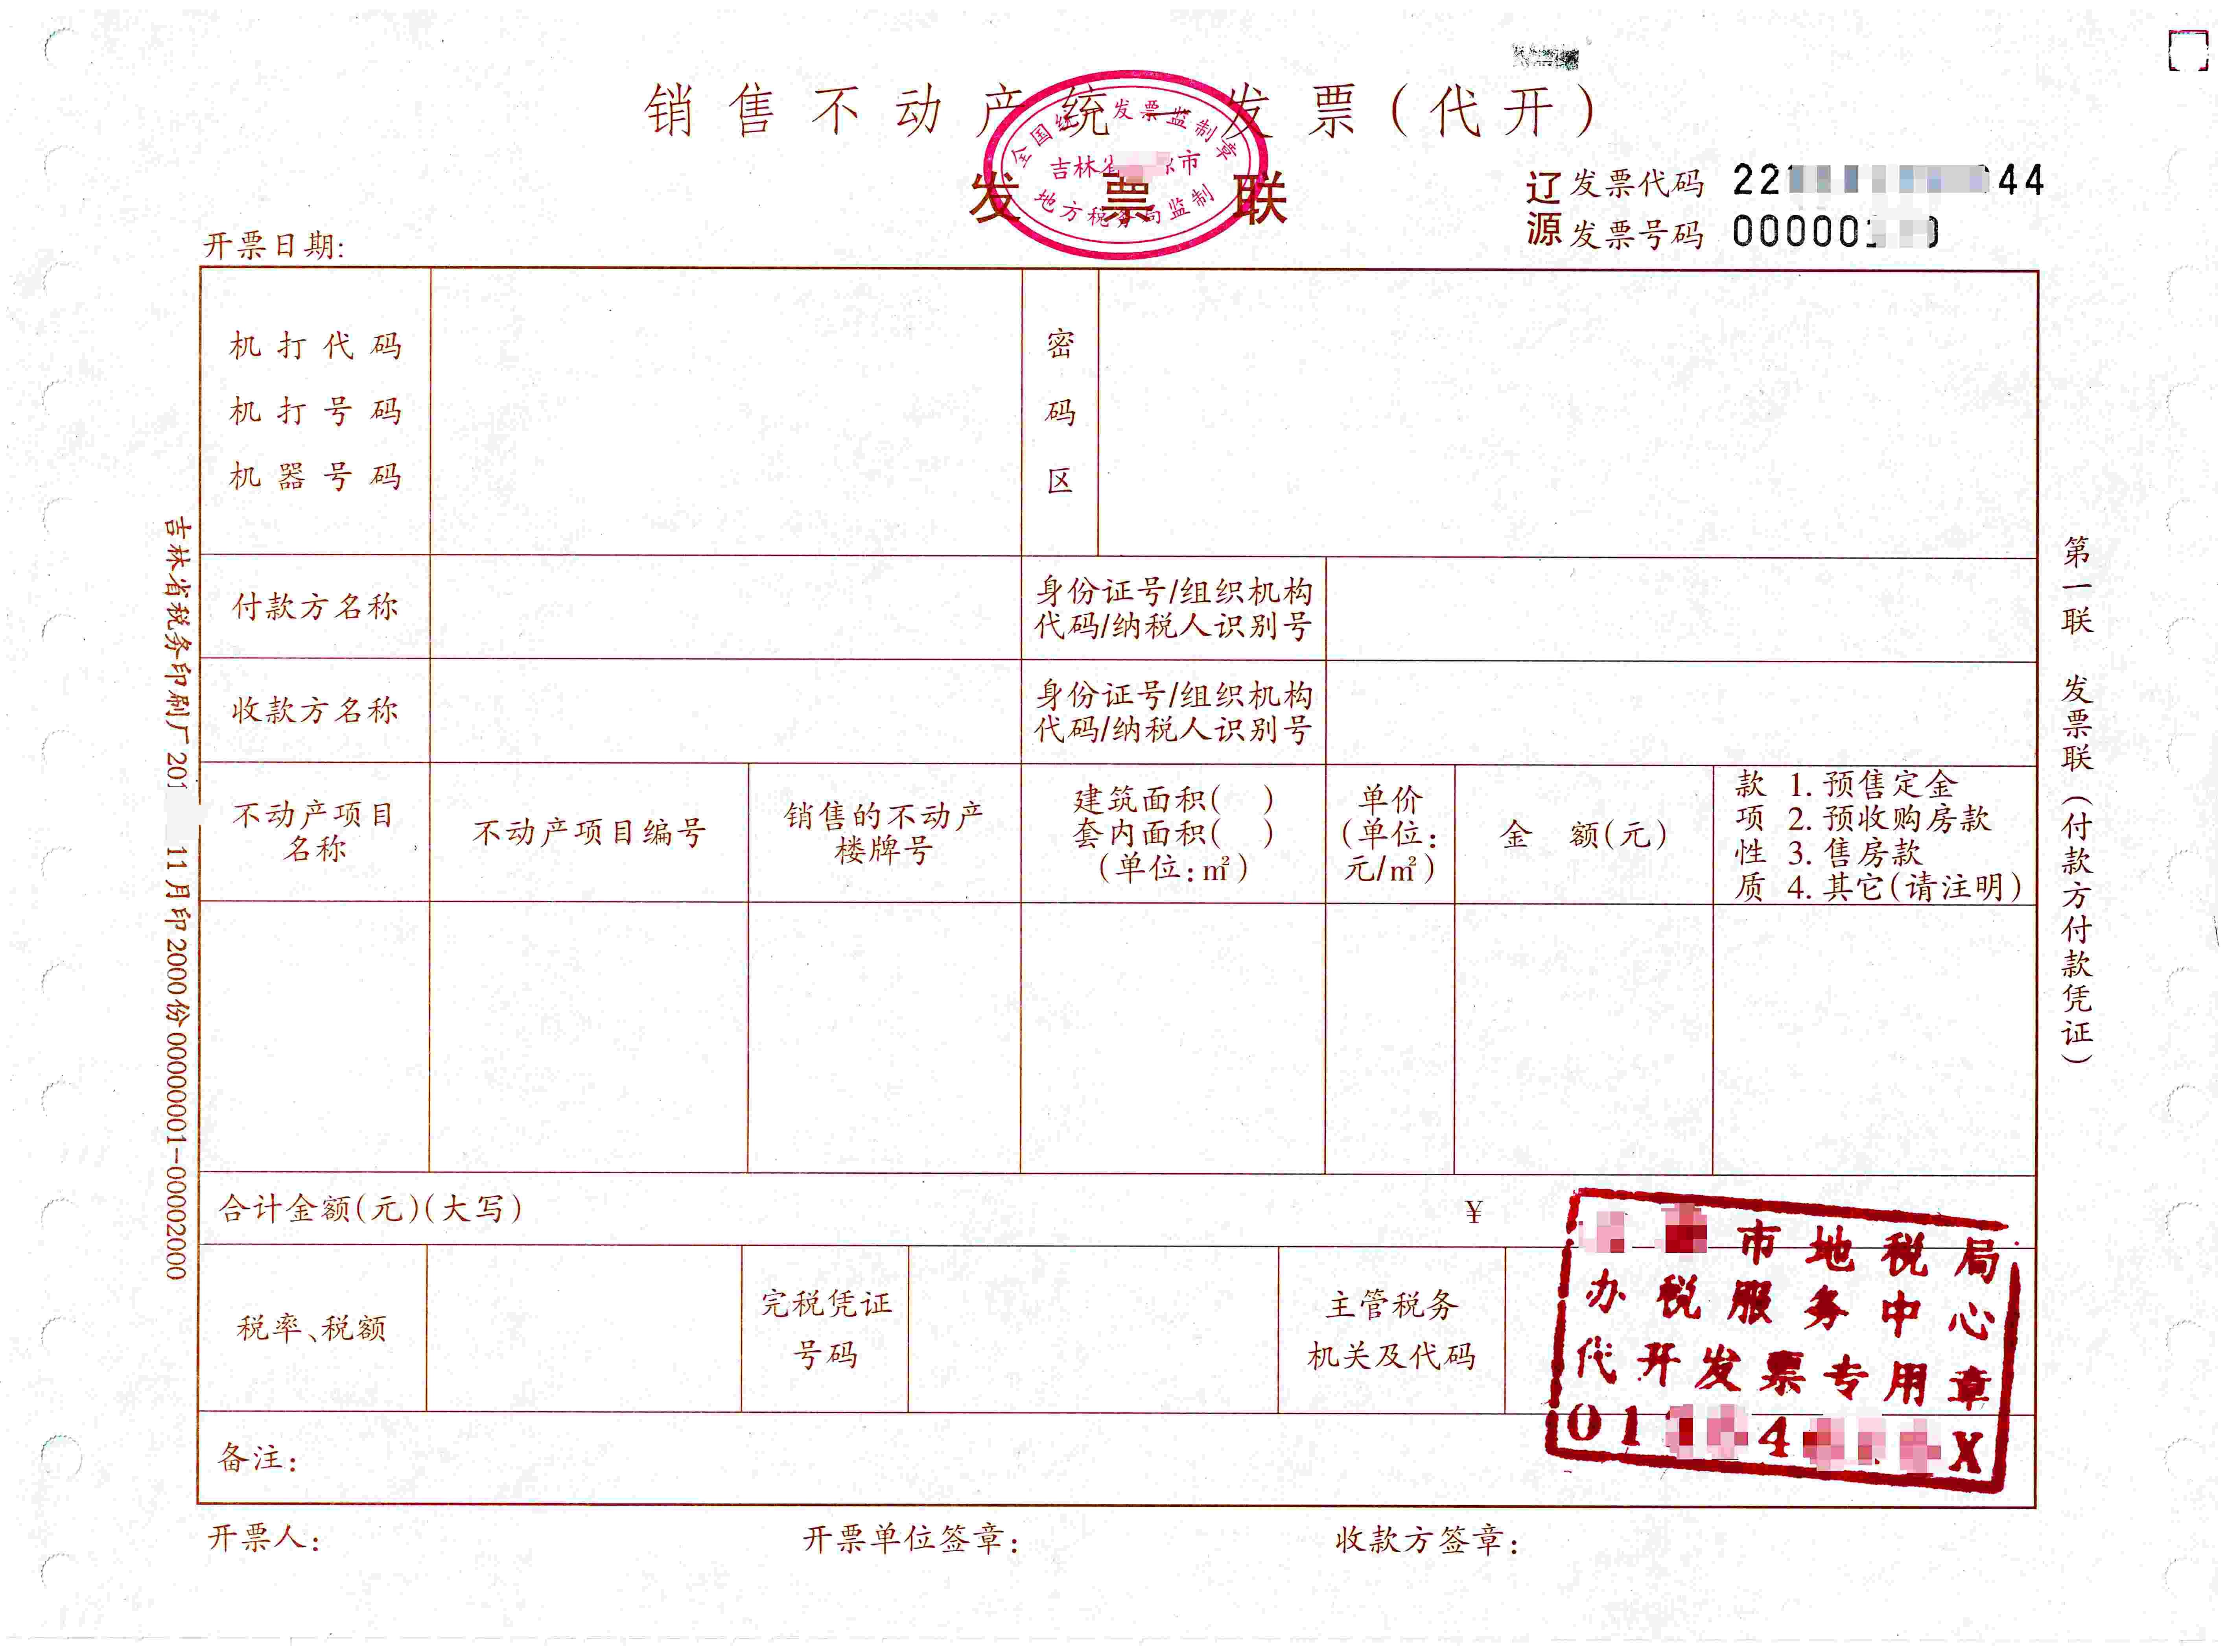 工作票14张 - 广州市创星教育培训中心